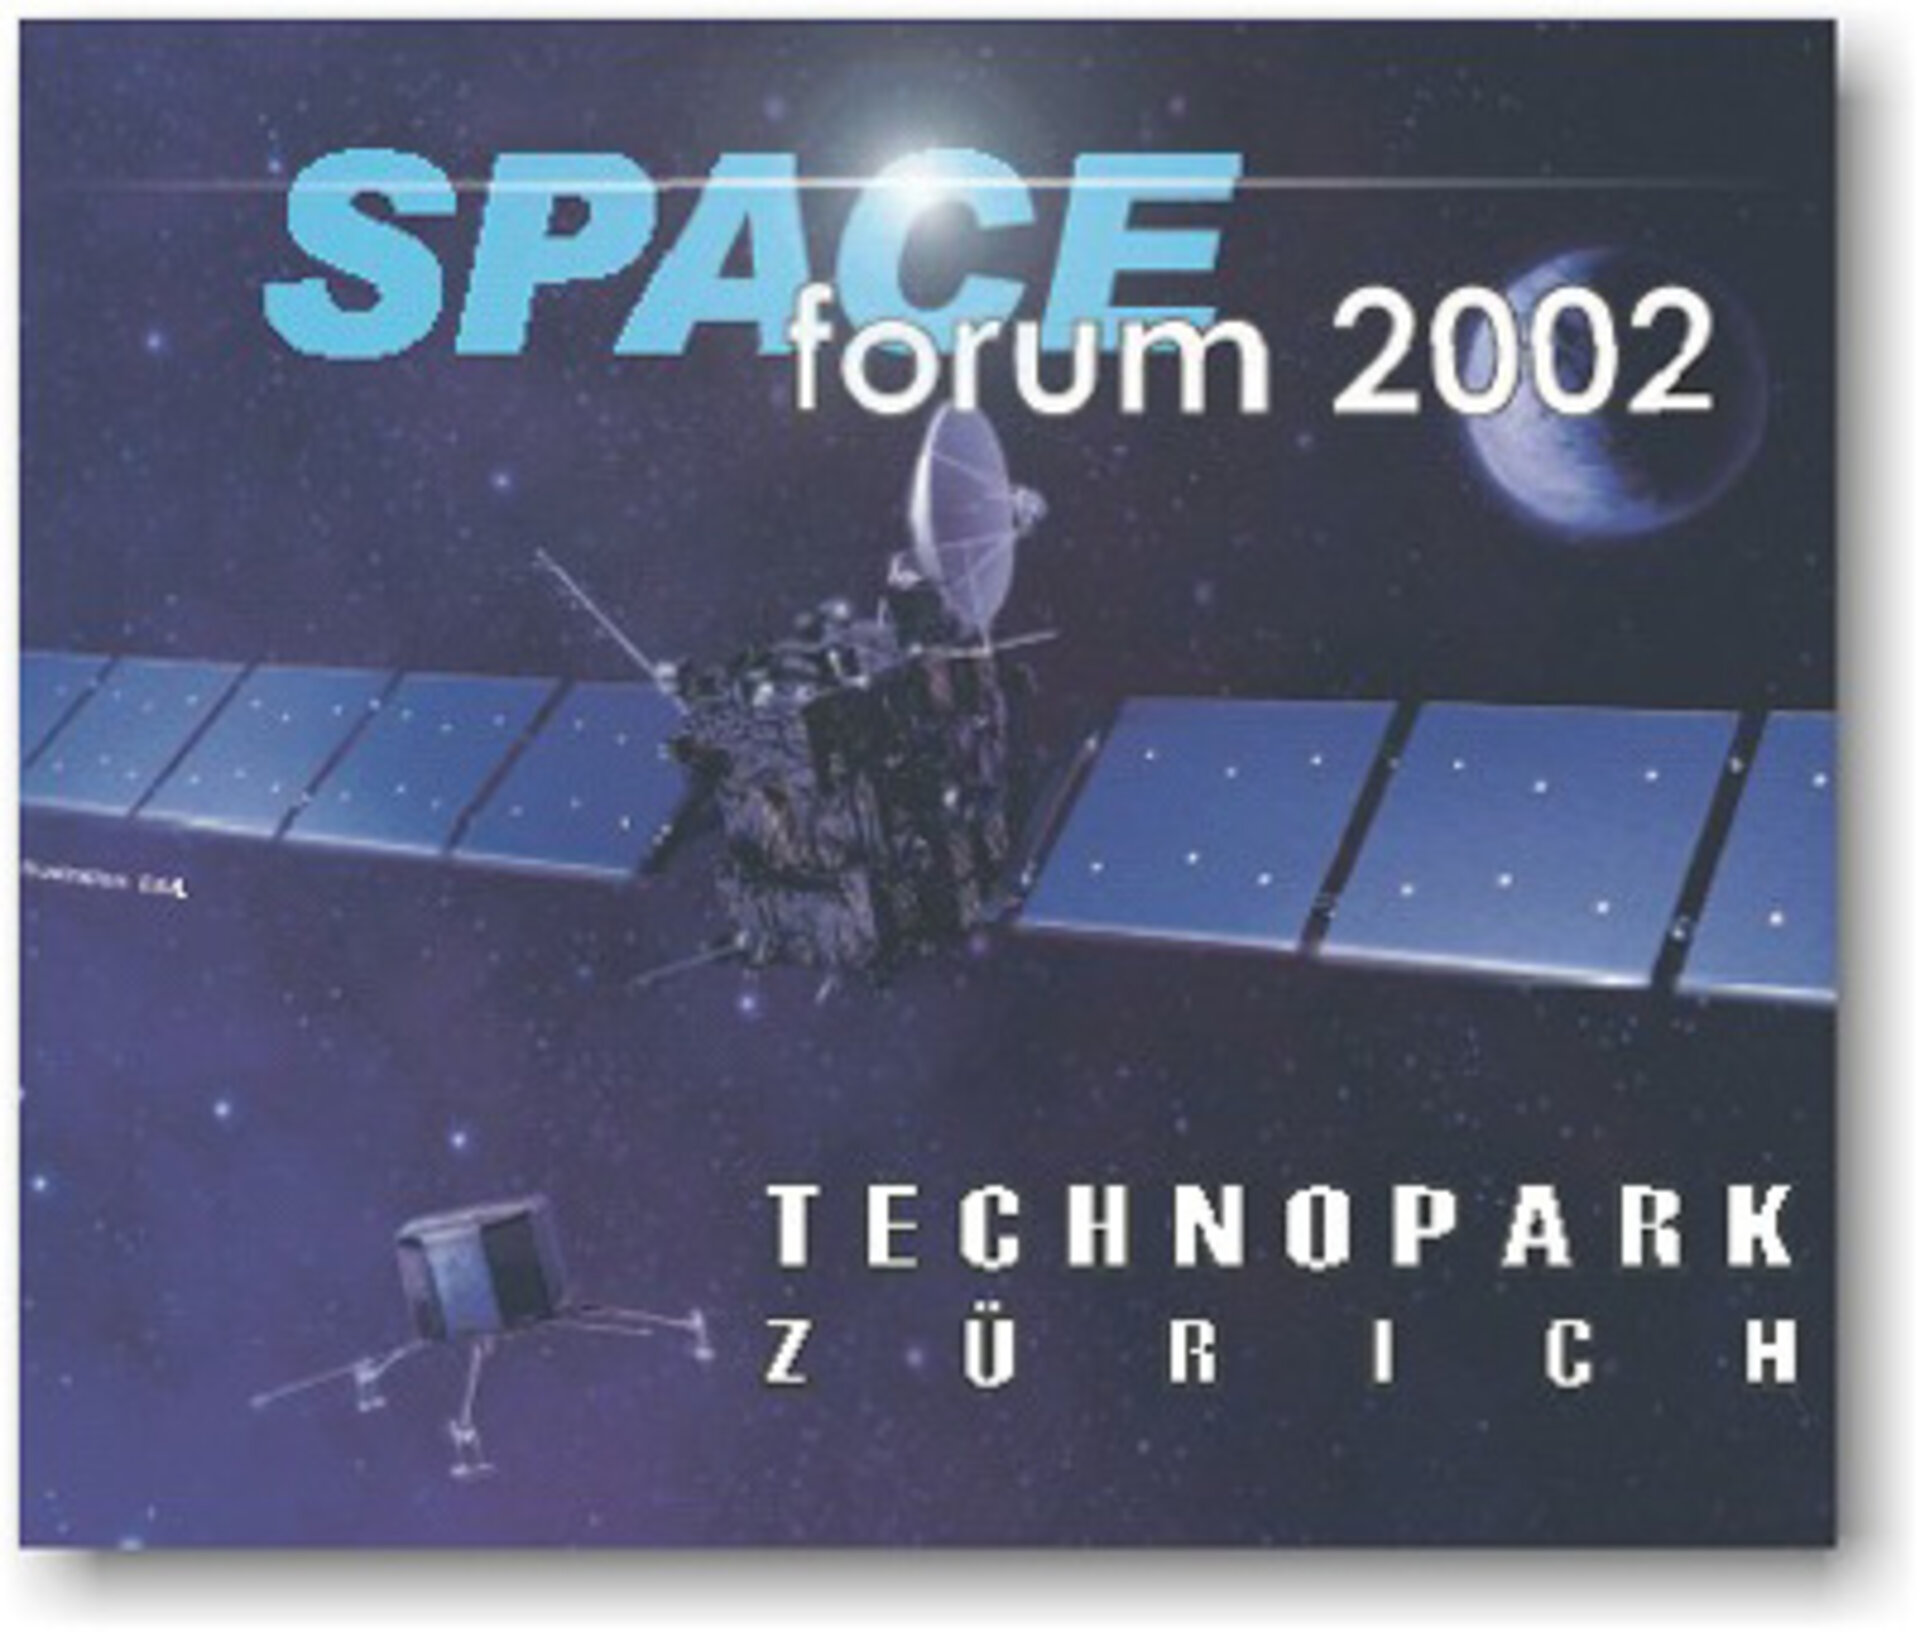 Space Forum 2002 in Zürich